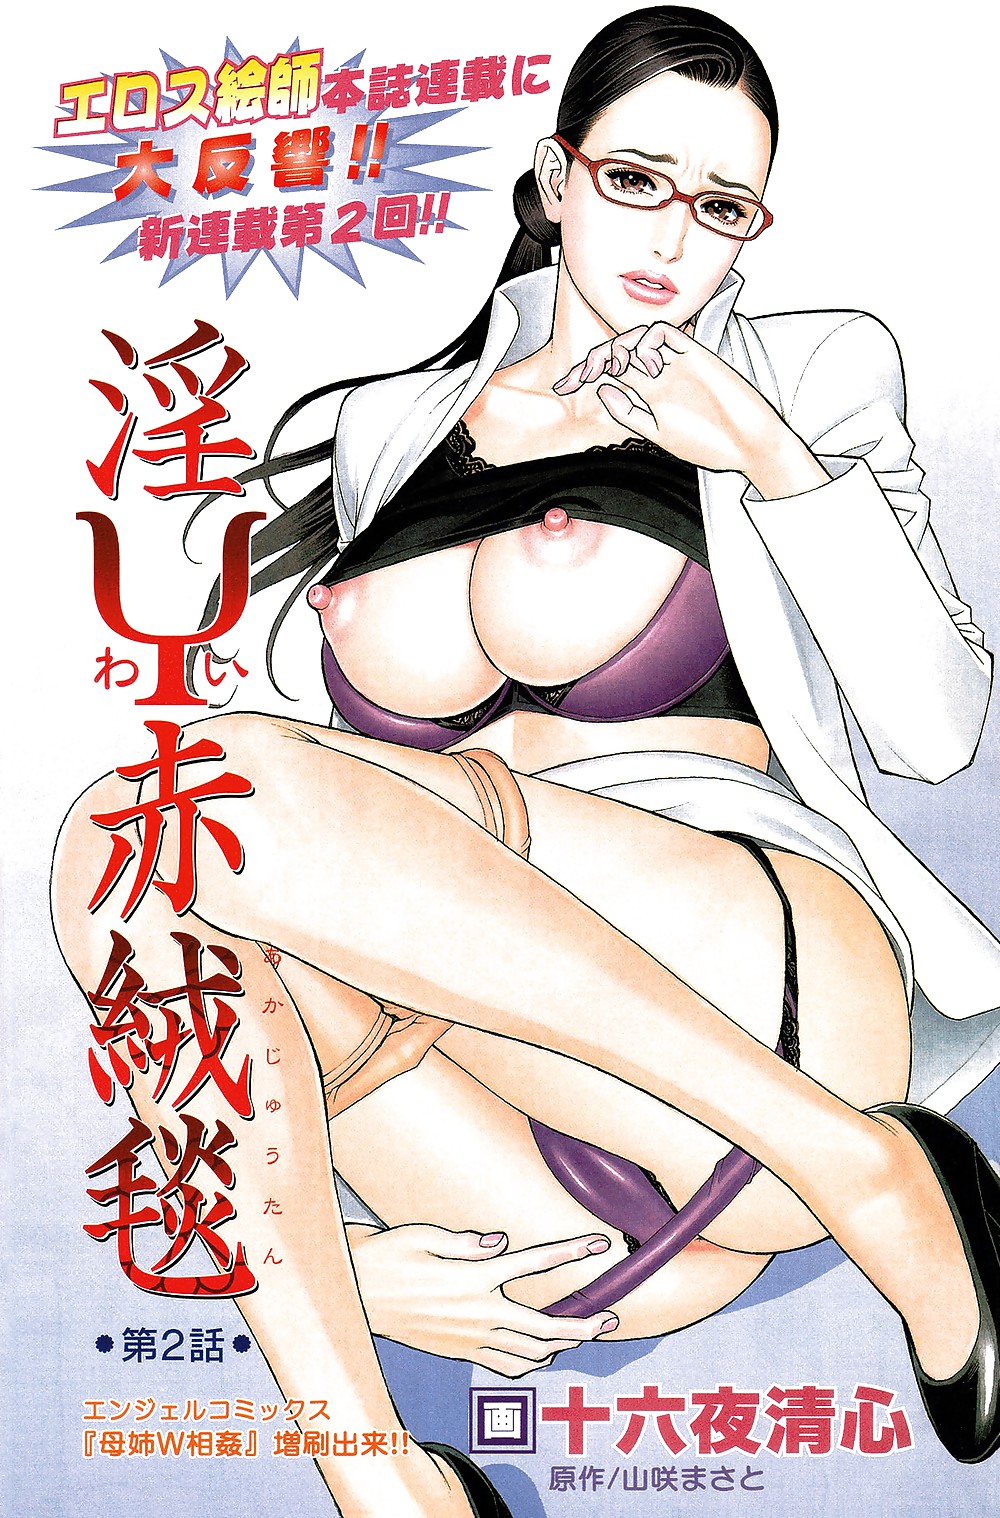 El arte de izayoi seishin - el mejor hentai del mundo
 #22182385